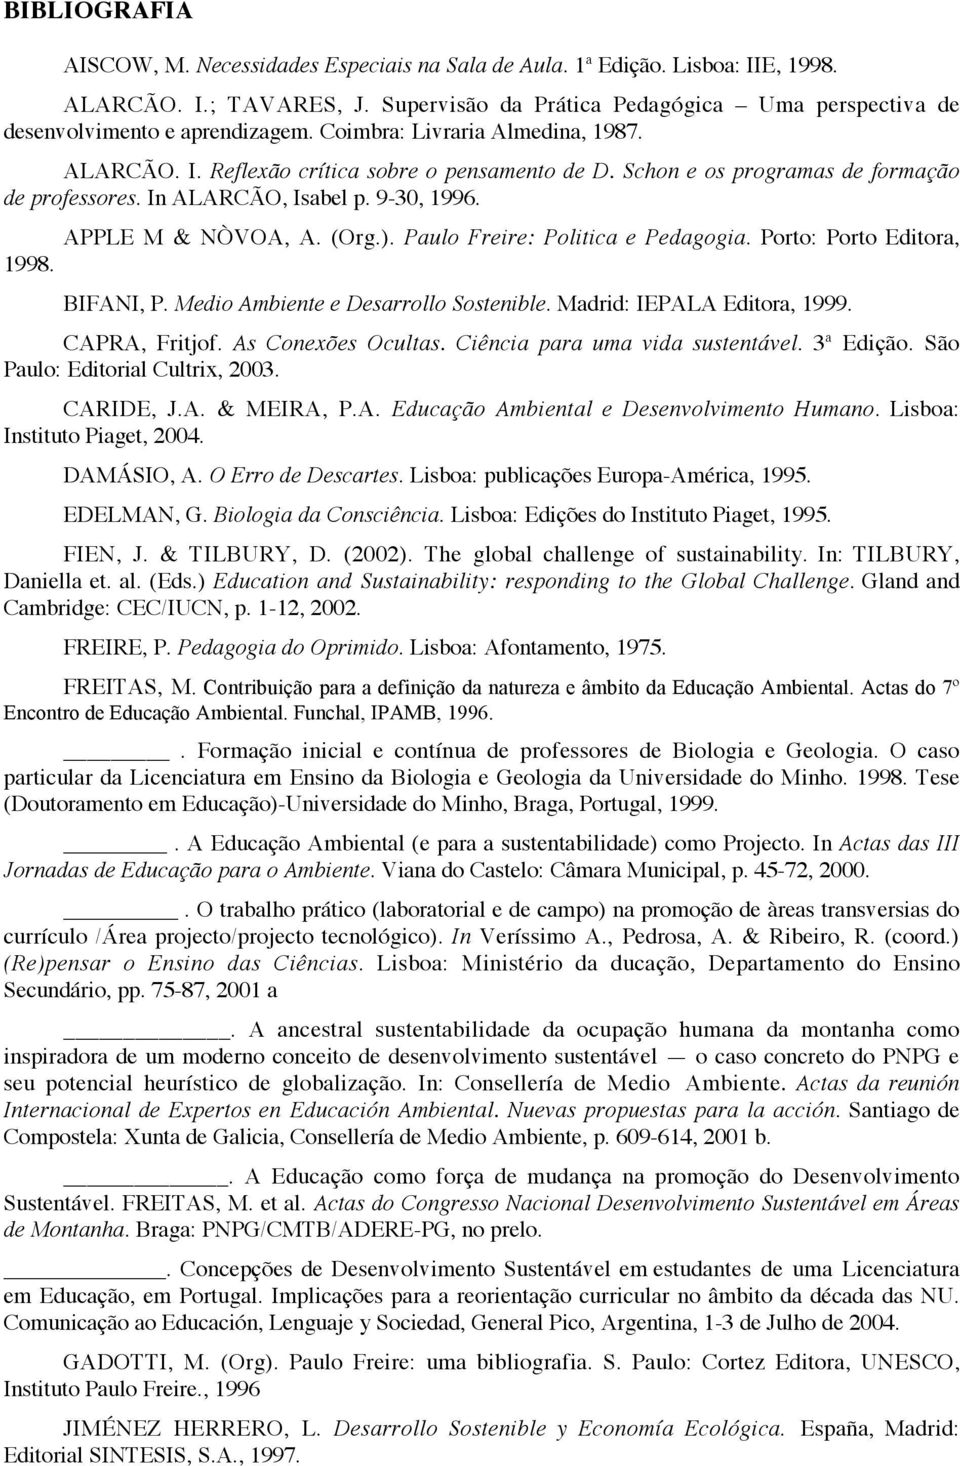 Schon e os programas de formação de professores. In ALARCÃO, Isabel p. 9-30, 1996. APPLE M & NÒVOA, A. (Org.). Paulo Freire: Politica e Pedagogia. Porto: Porto Editora, 1998. BIFANI, P.